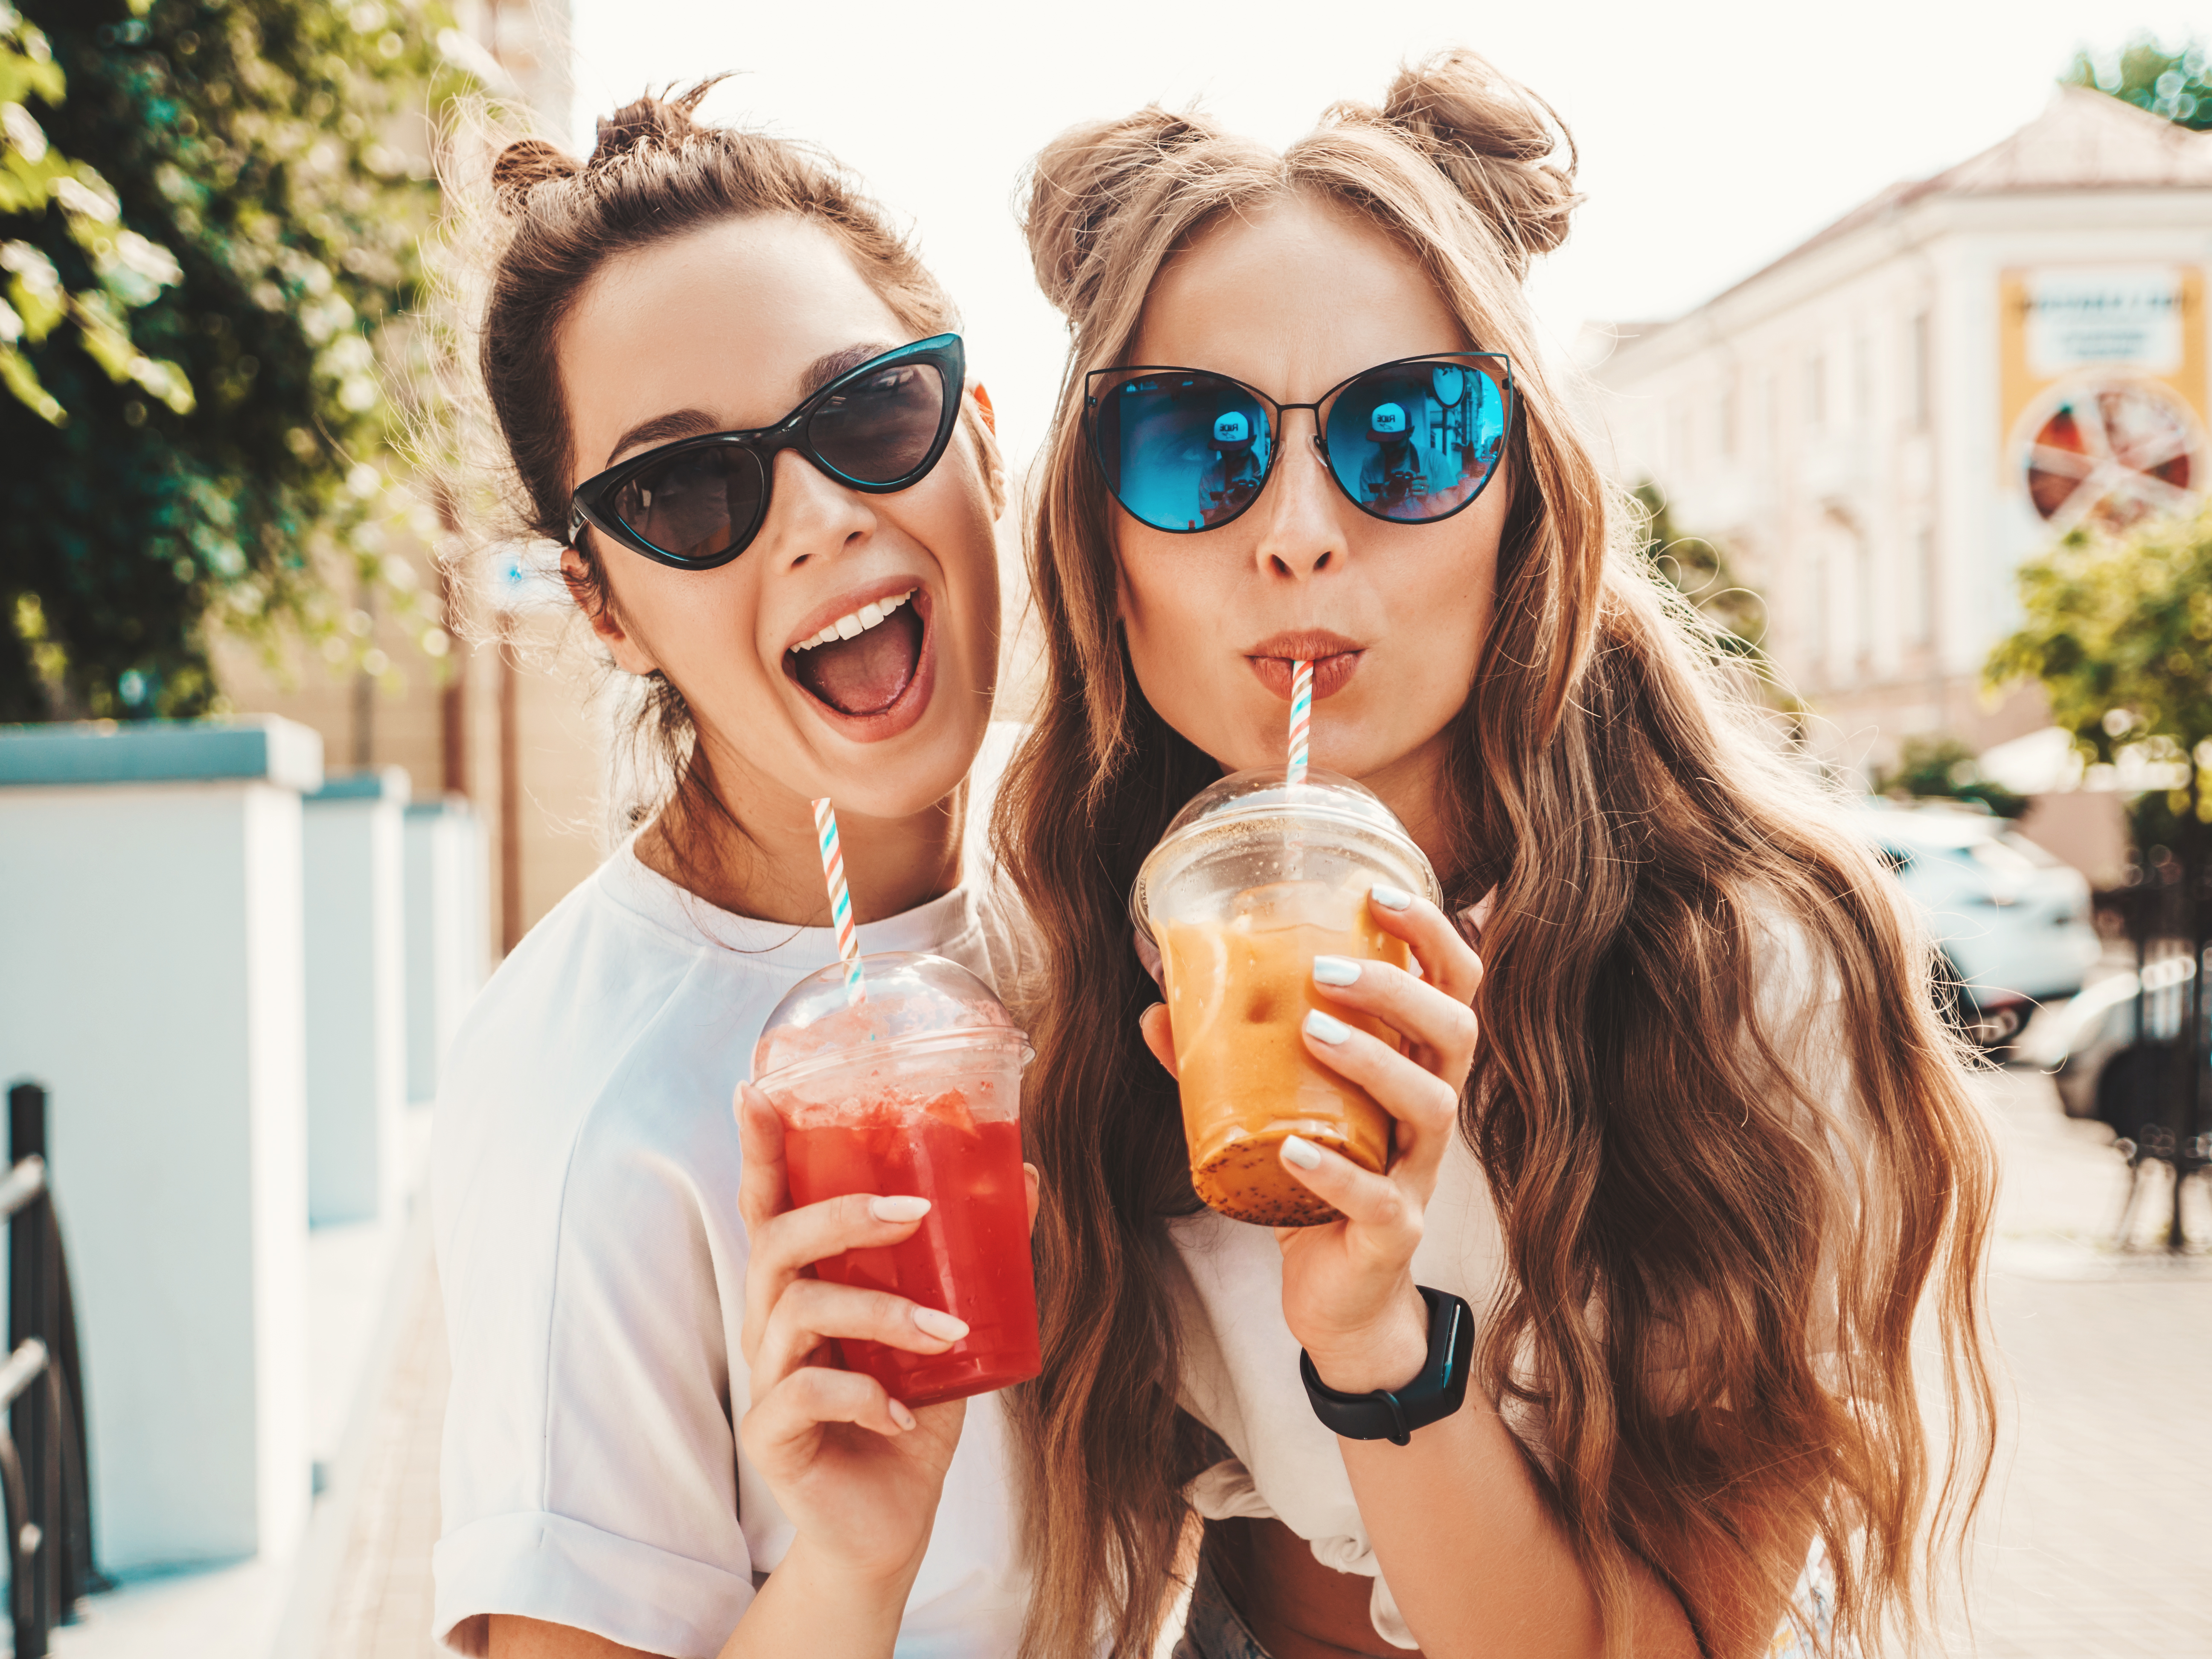 Deux amis dégustant des smoothies | Source : Shutterstock